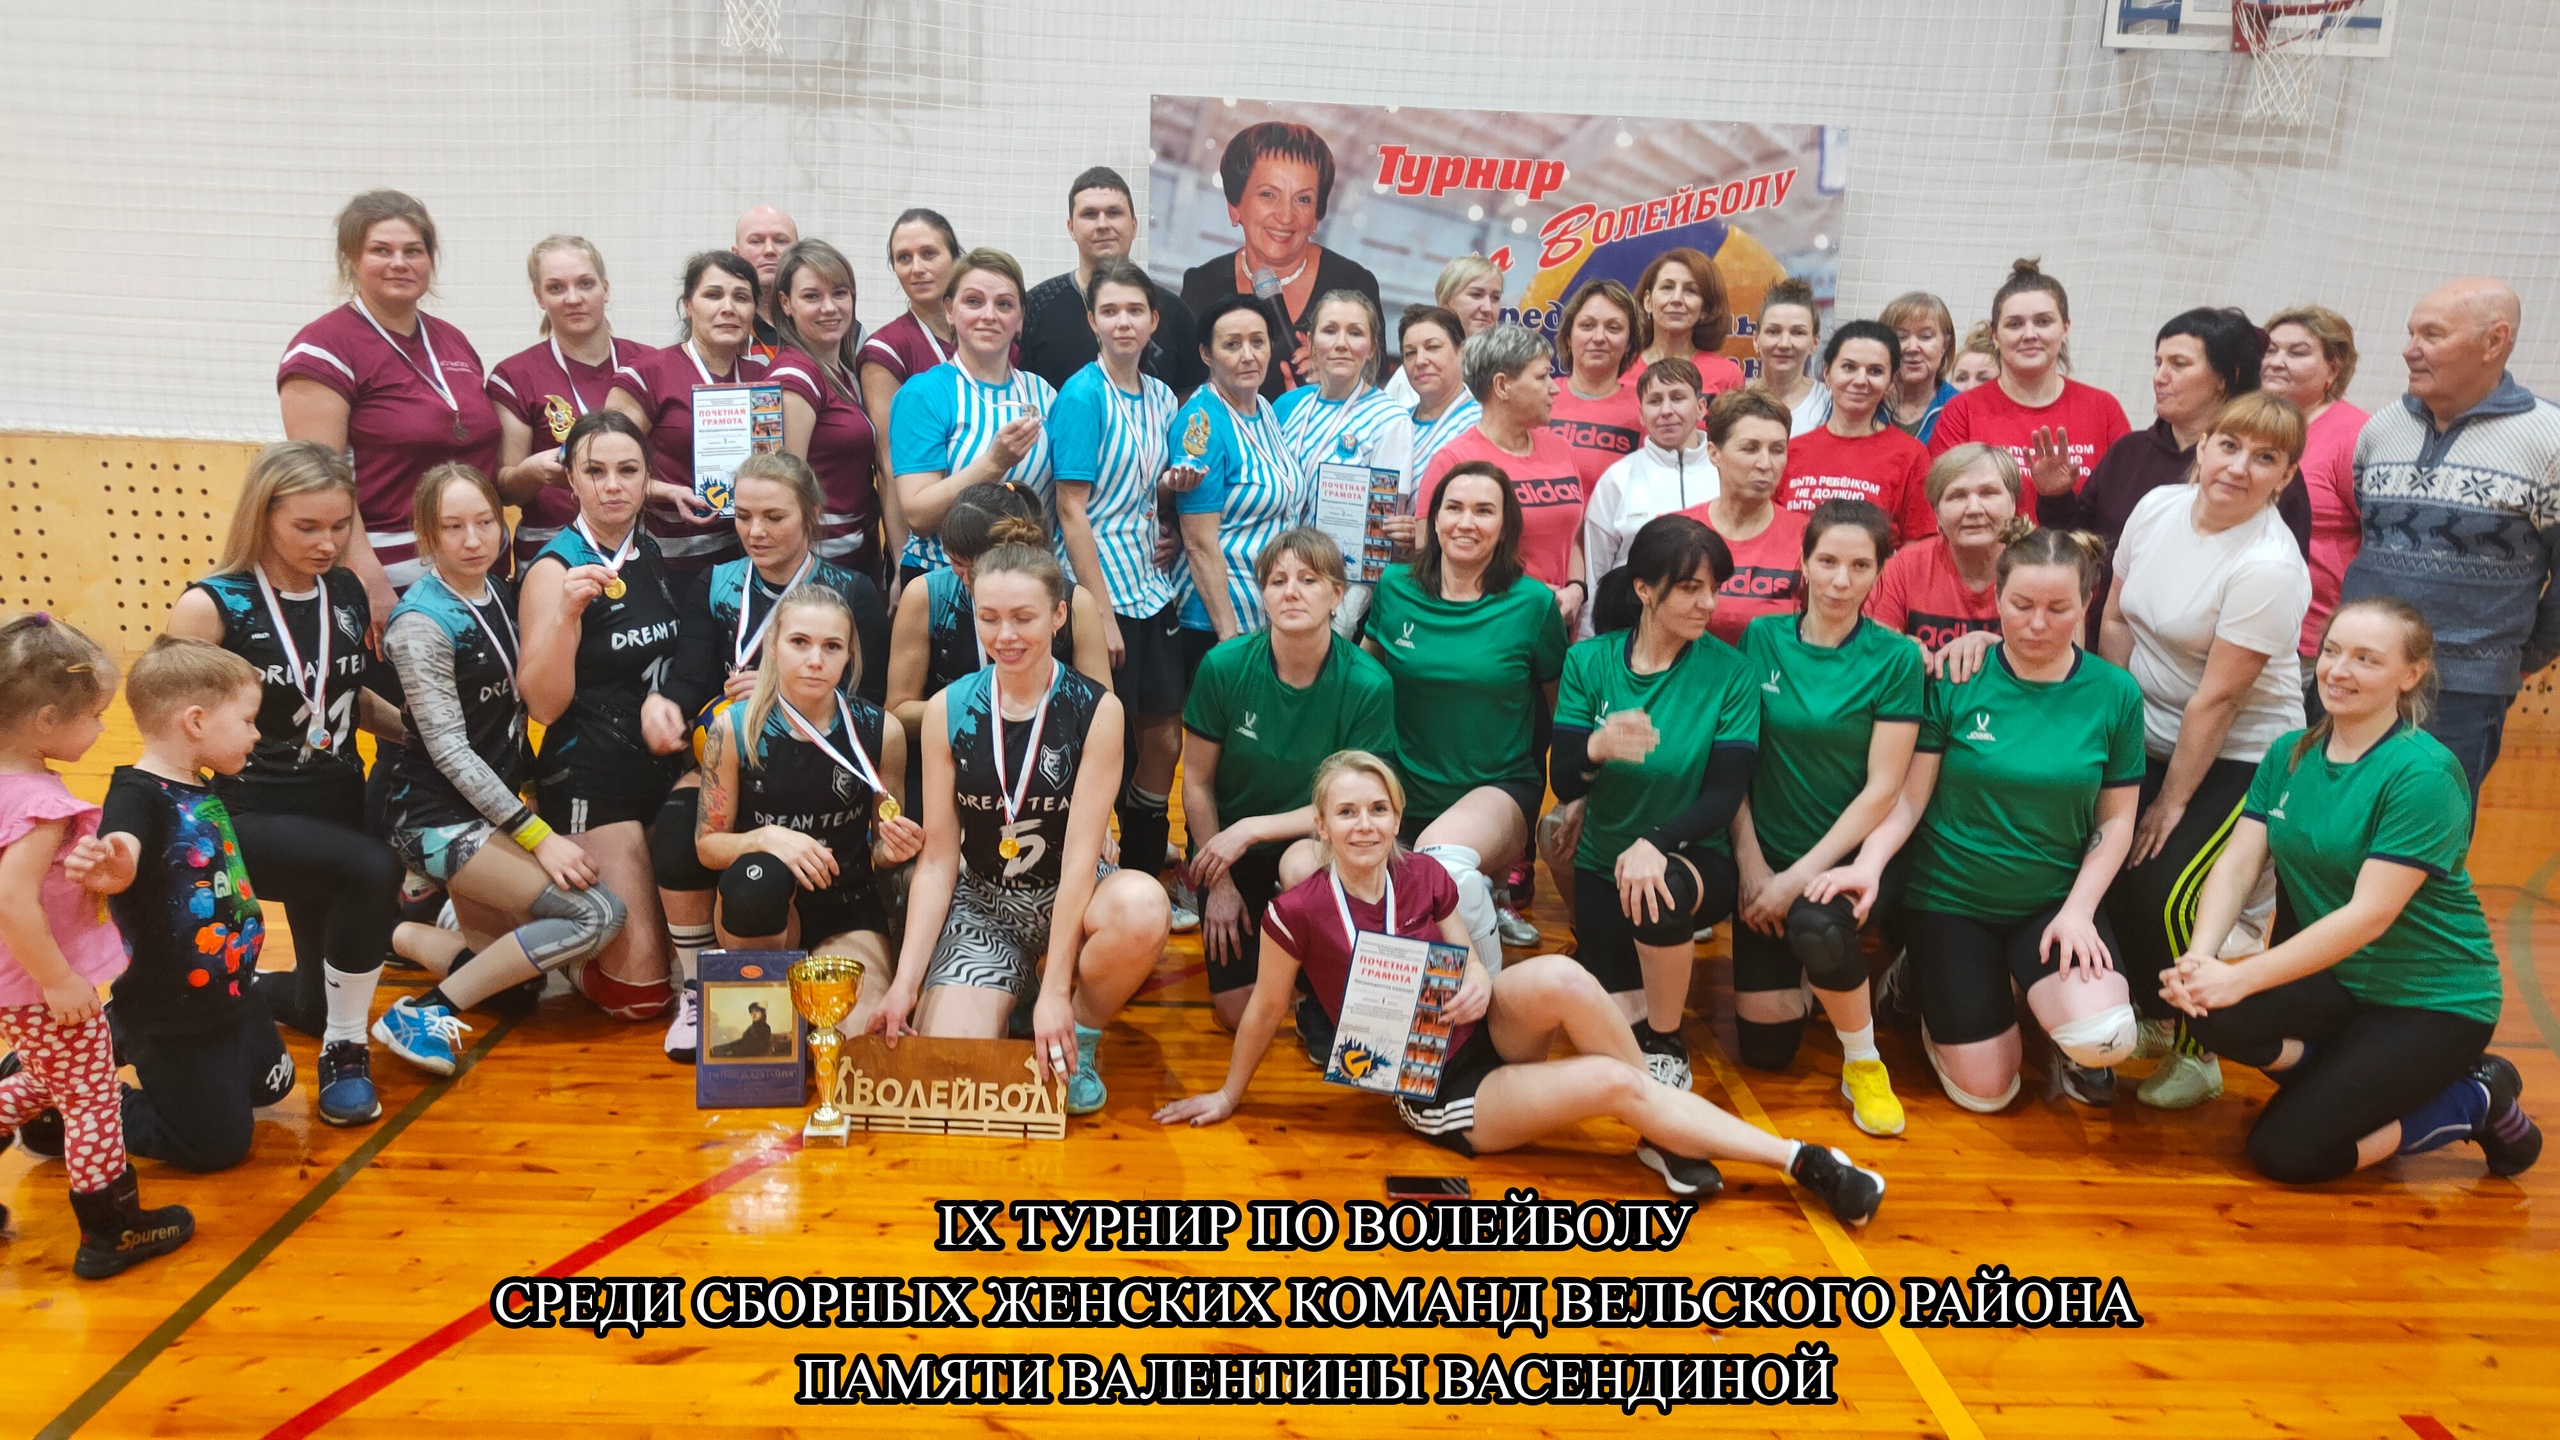 IX турнир по волейболу среди сборных женских команд Вельского района Архангельской области памяти Валентины Васендиной.